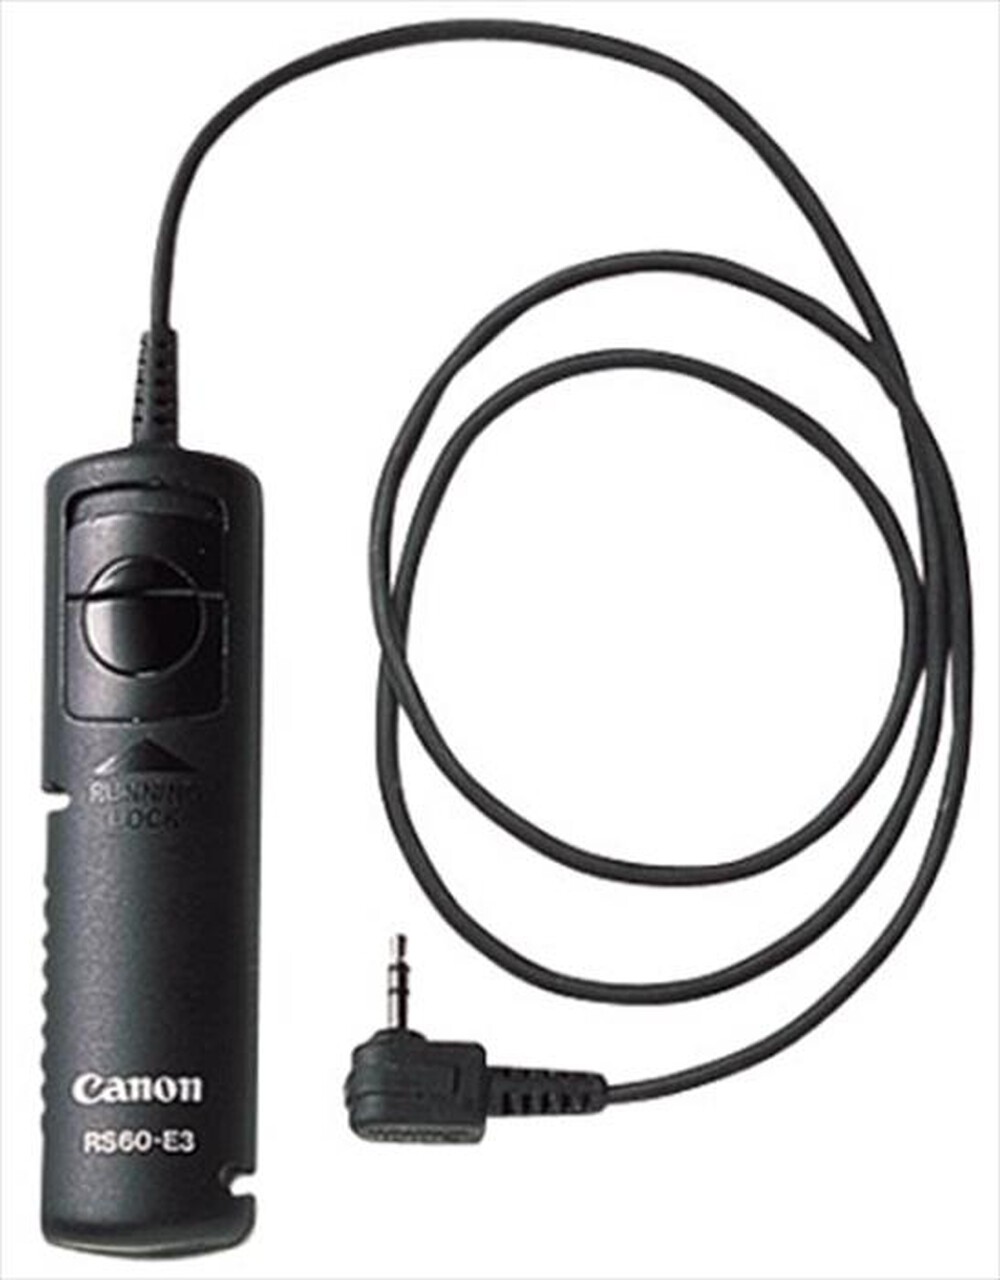 "CANON - RS-60 E3 Camera Remote Switch - black"